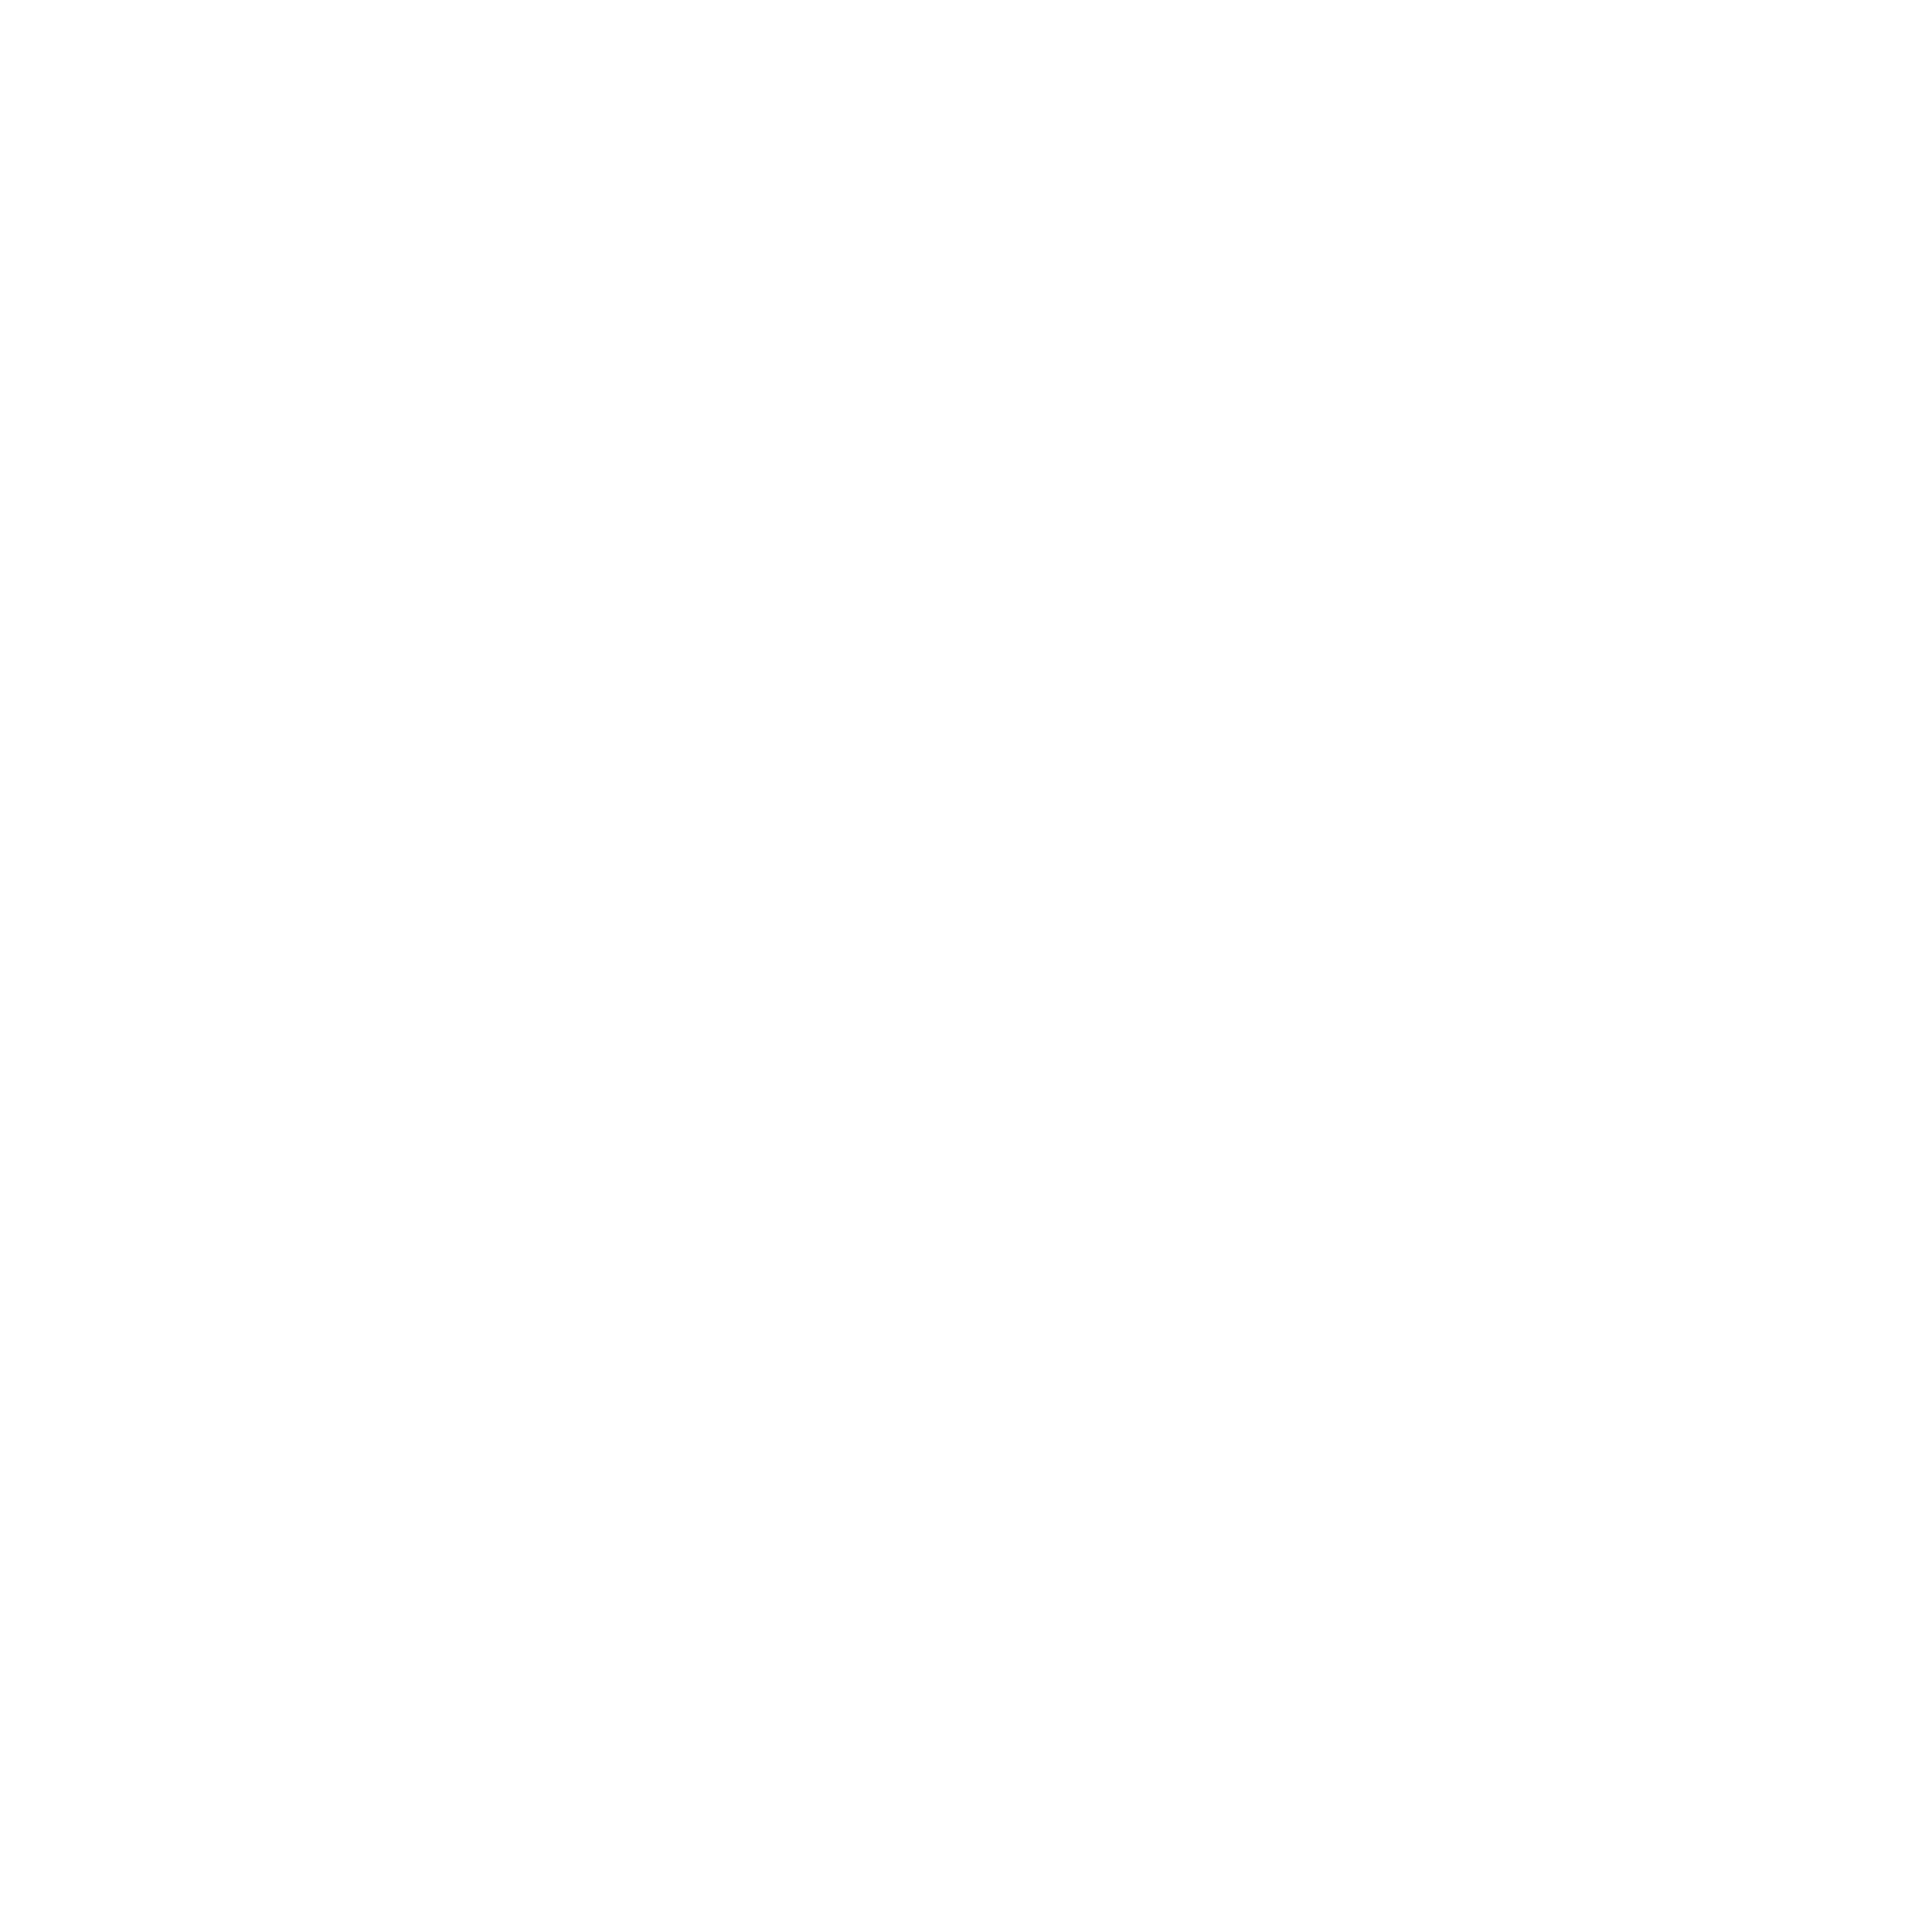 J-T-R Clothing